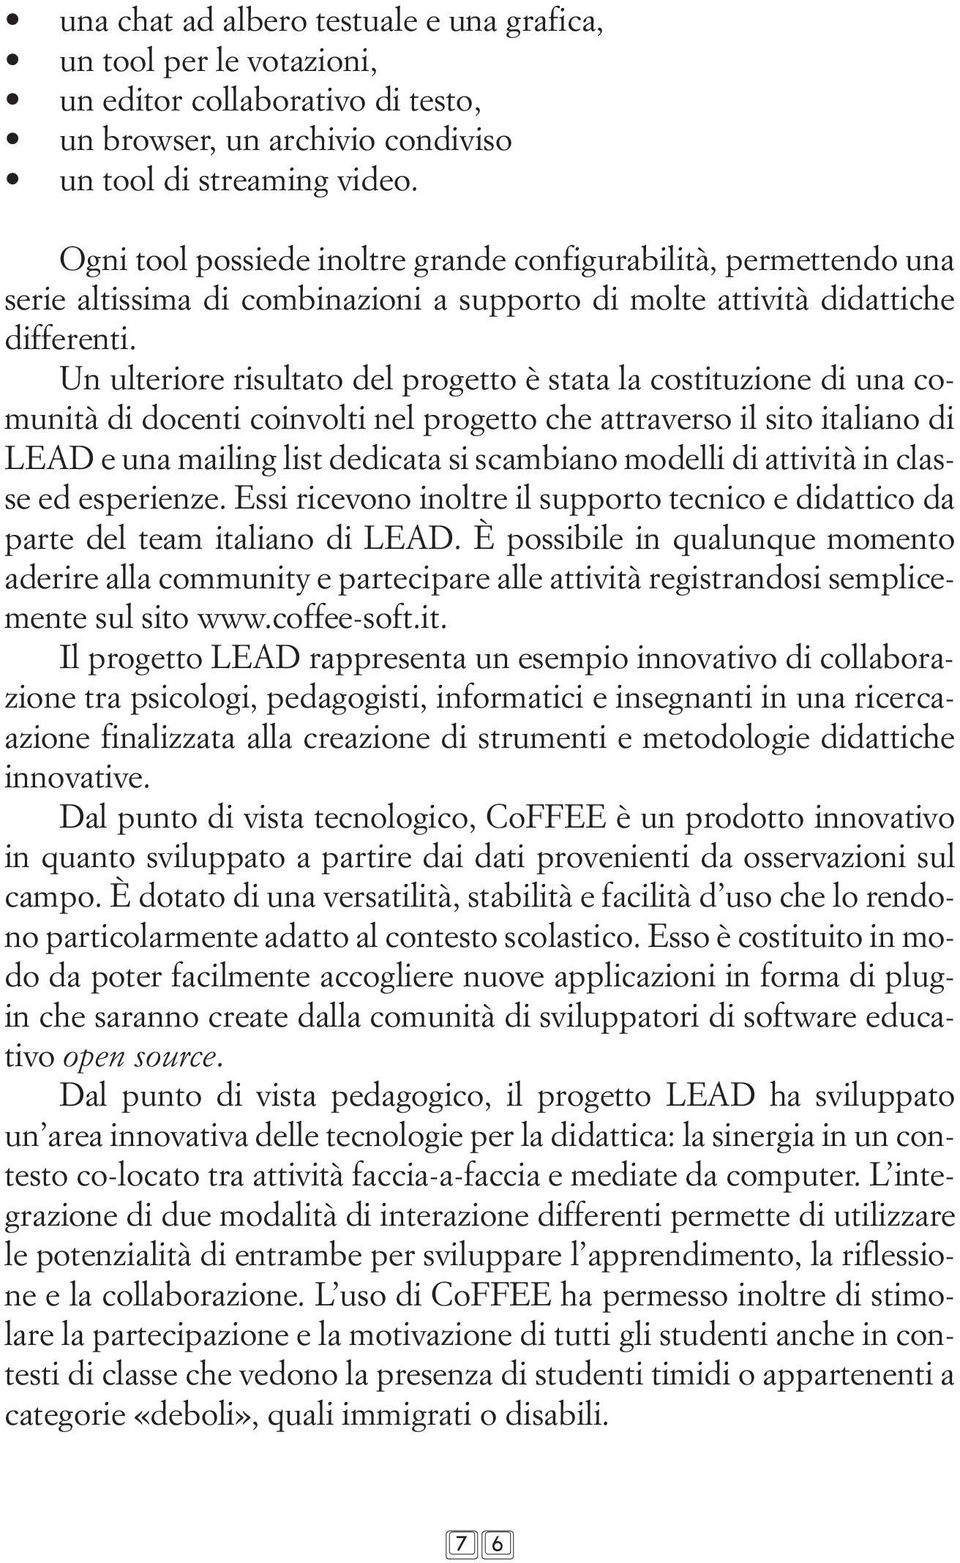 Un ulteriore risultato del progetto è stata la costituzione di una comunità di docenti coinvolti nel progetto che attraverso il sito italiano di LEAD e una mailing list dedicata si scambiano modelli